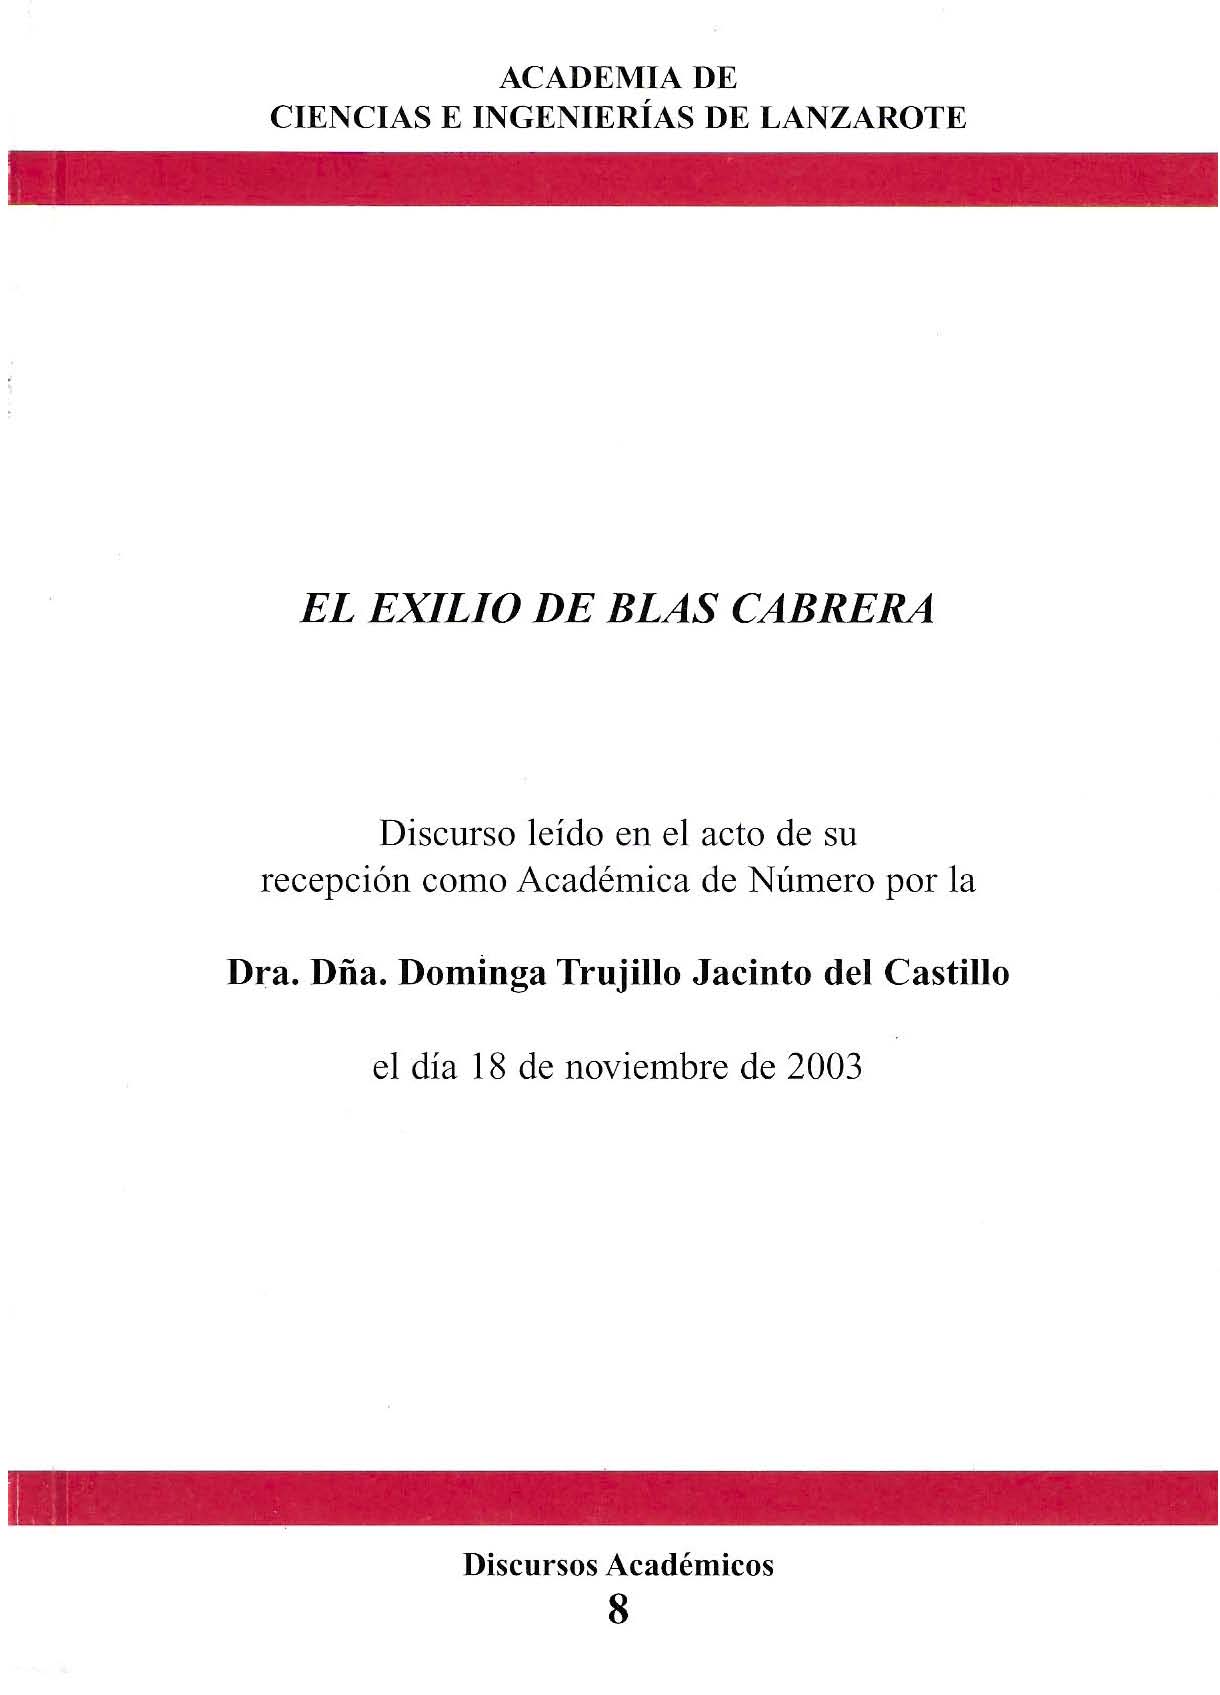 El exilio de Blas Cabrera